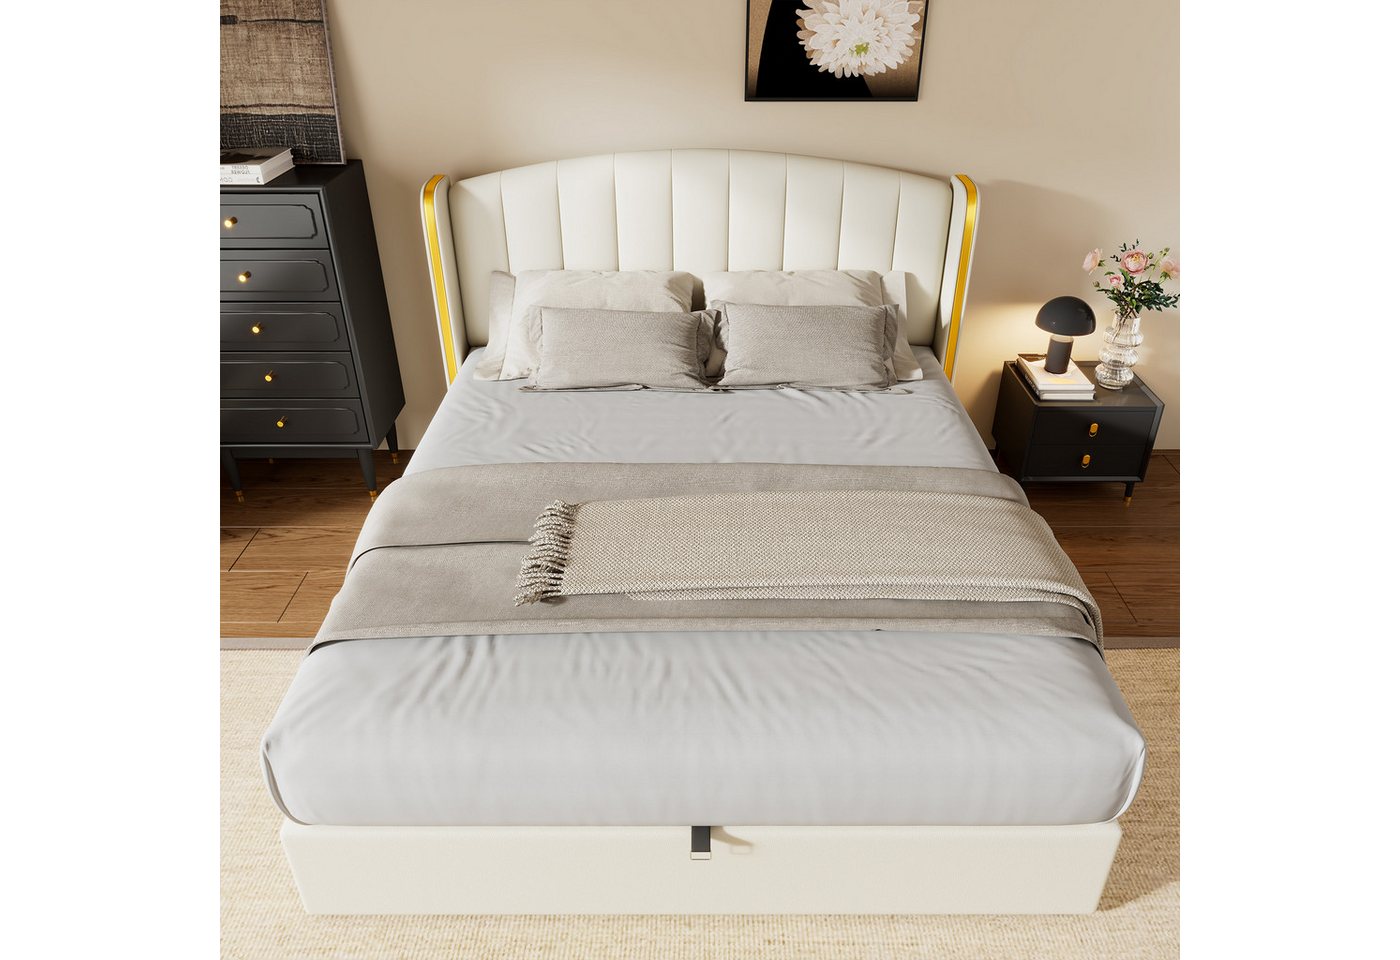 OKWISH Polsterbett Hydraulisches Bett (140*200cm), mit goldgerandetes Ohrendesign, Bettkasten, Lattenrost und Kopfteil von OKWISH